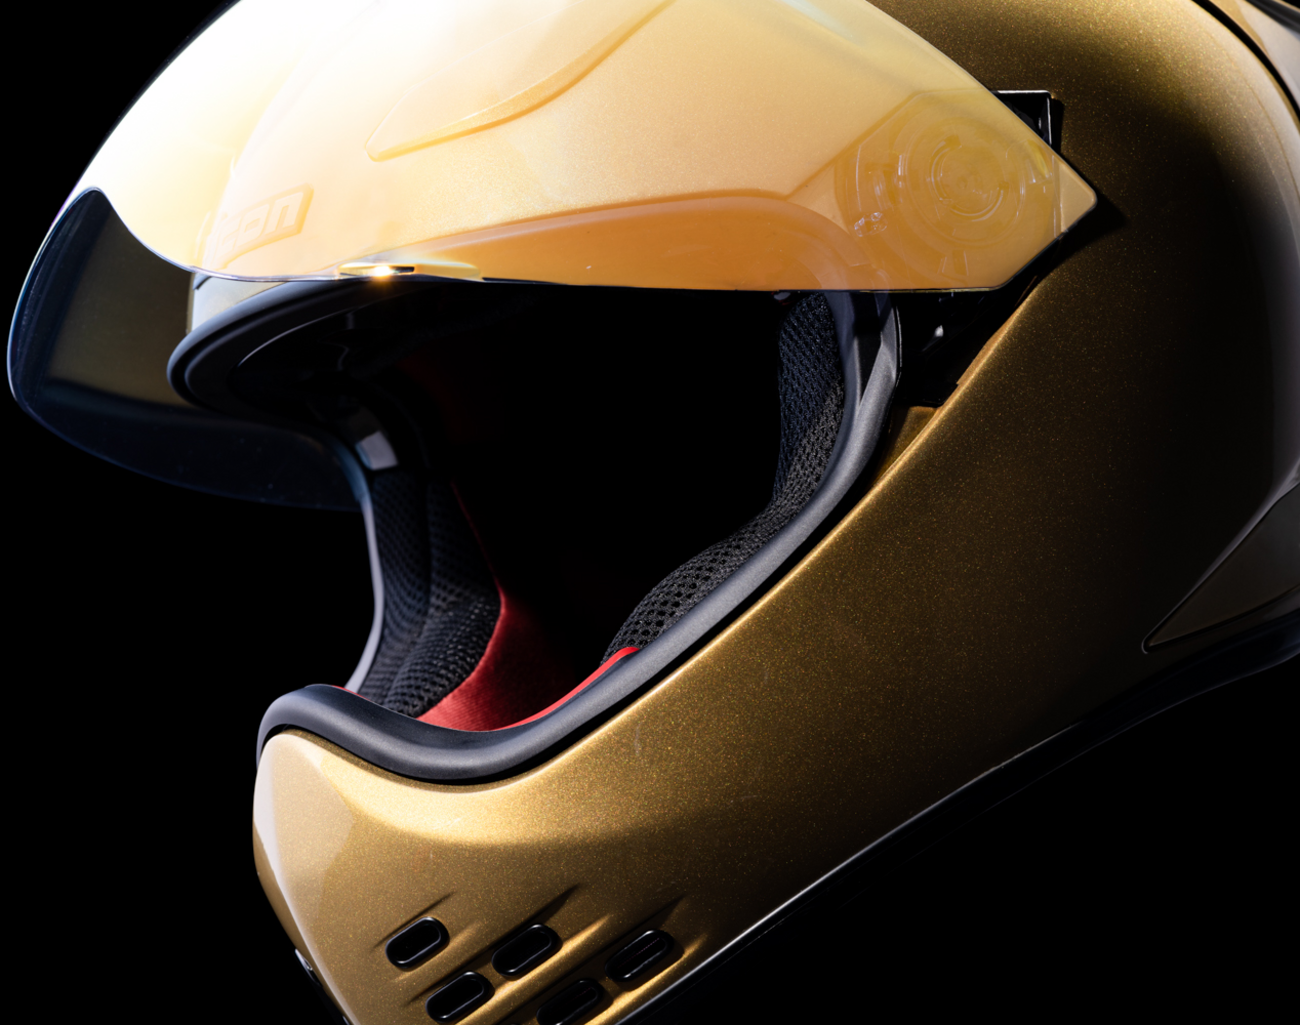 ICON Domain™ Helmet - Cornelius - Gold - Medium 0101-14967